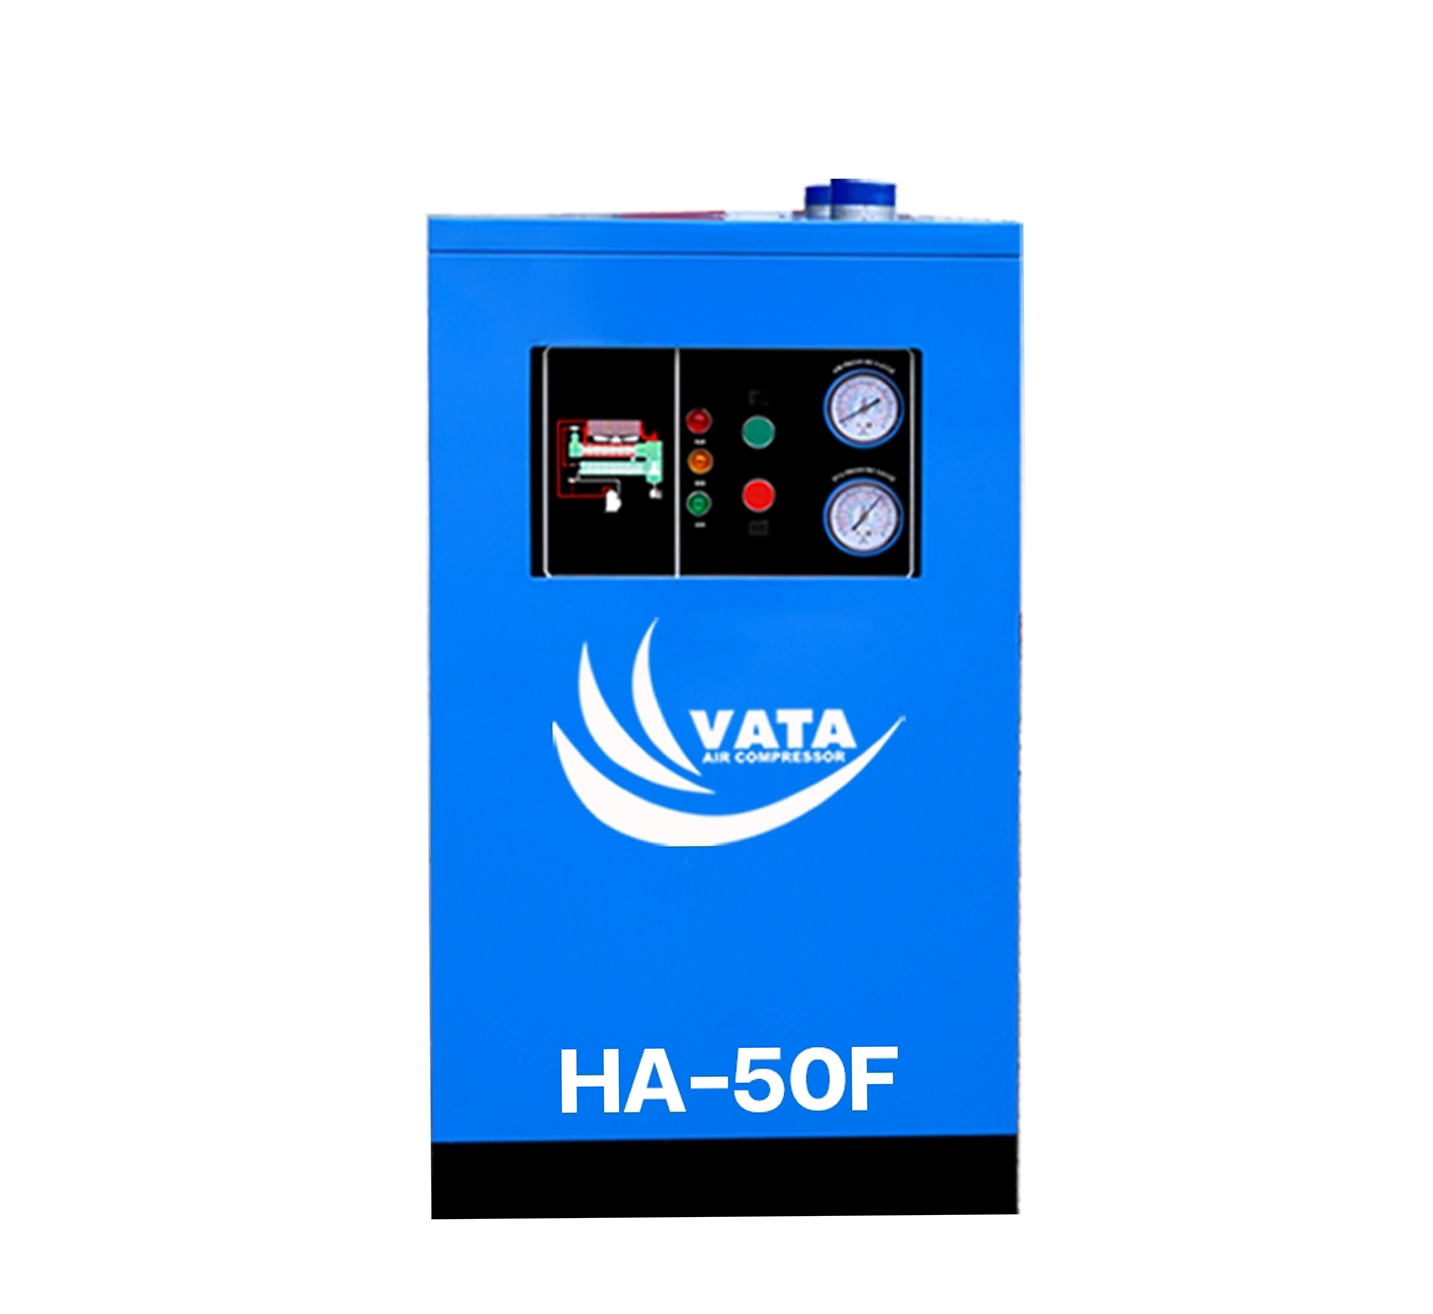 เครื่องทำลมแห้ง Refrigerated Air Dryer แบรนด์ VATA รุ่น HA-50F ขนาด 1.42 kw. ไฟฟ้า 220V รับประกันสินค้า 1 ปี ตามเงื่อนไขของบริษัทฯ